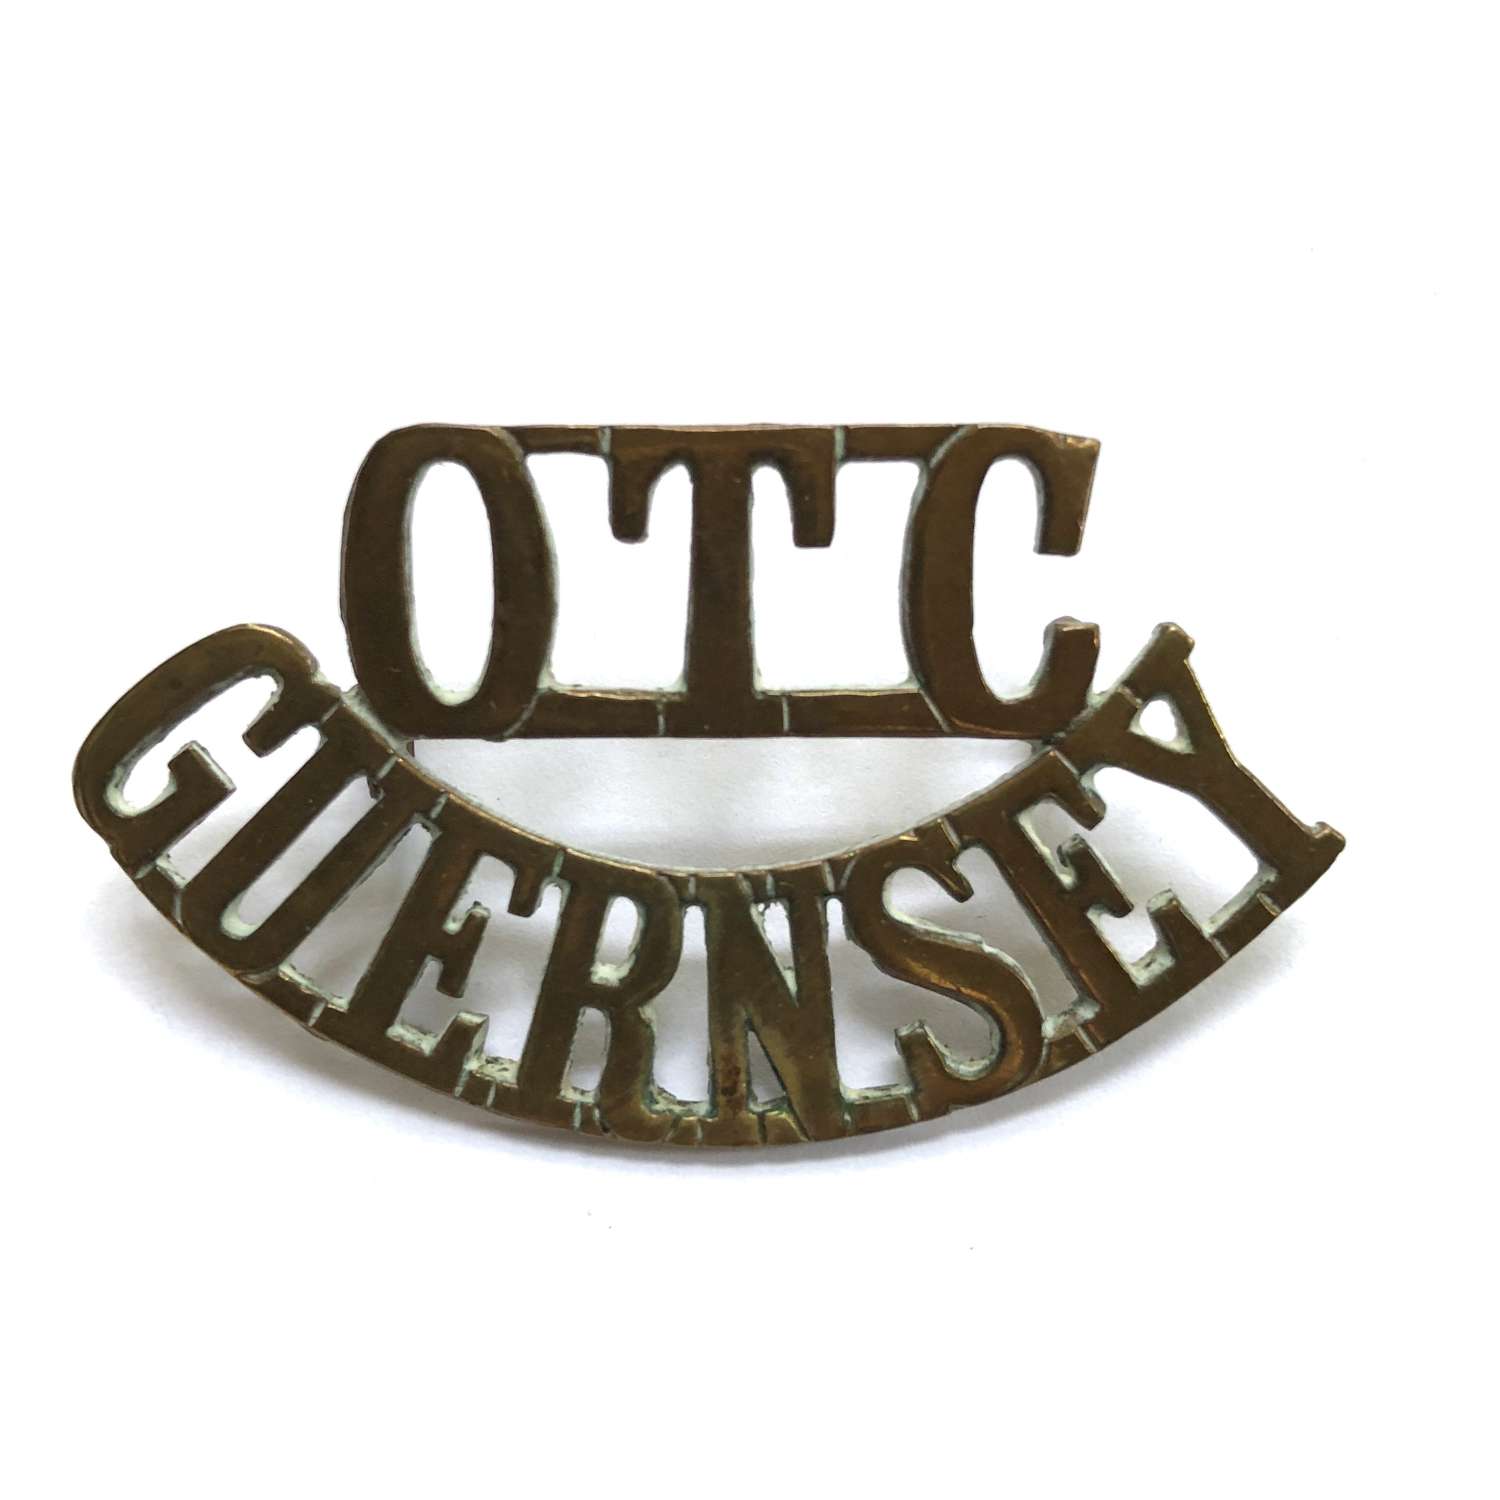 OTC / GUERNSEY shoulder title circa 1908-40